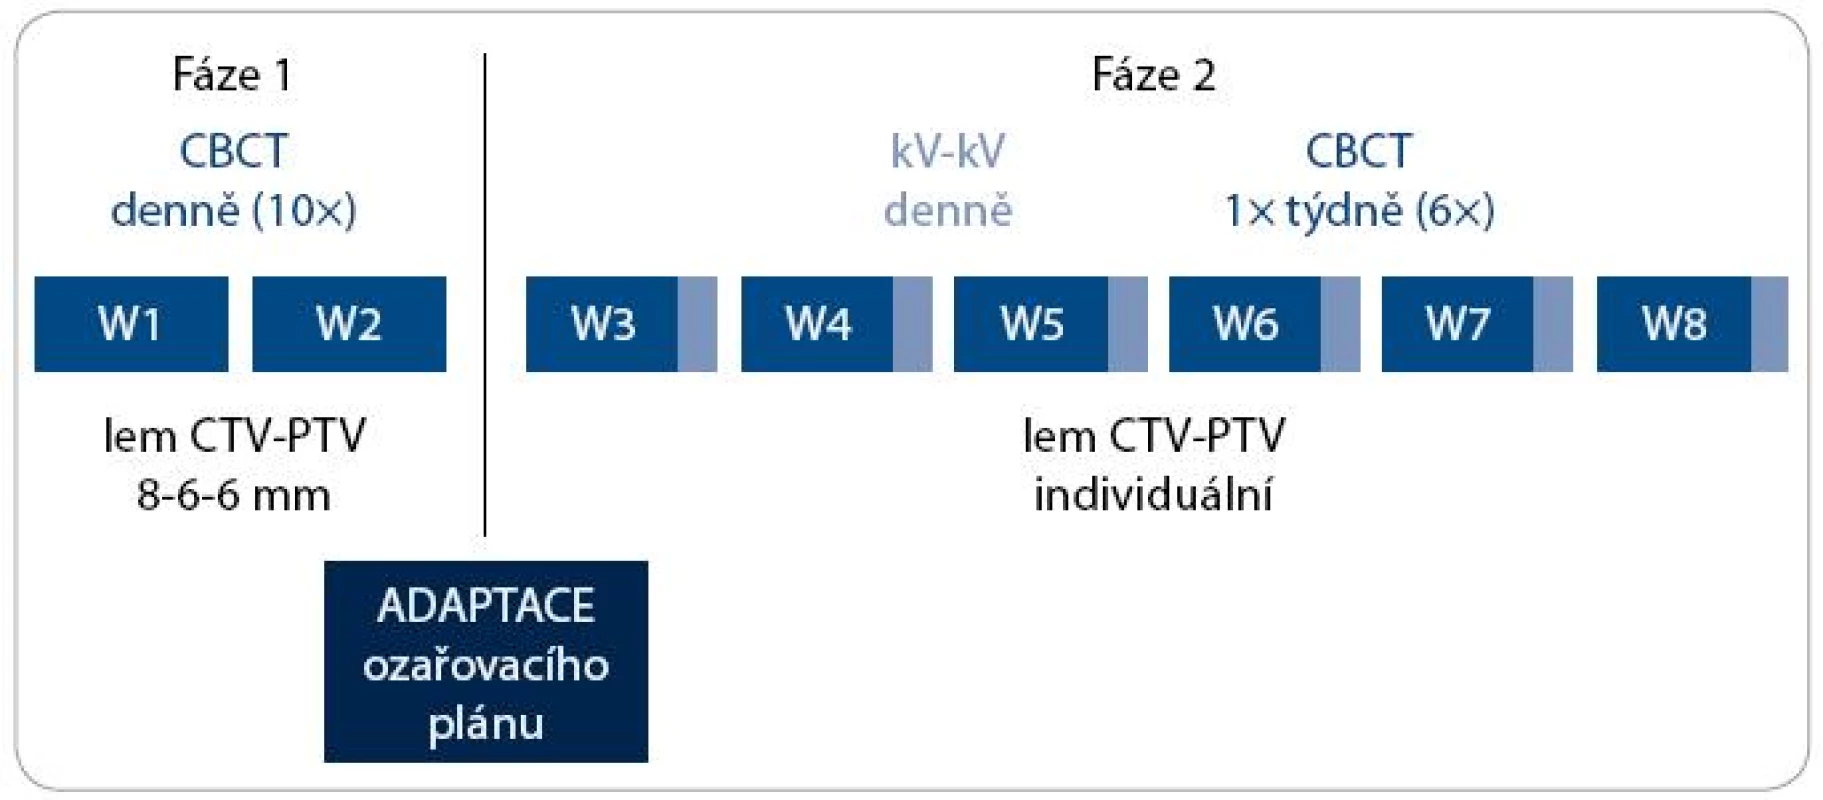 Algoritmus adaptivní IG-IMRT karcinomu prostaty.
CBCT – kilovoltážní CT kónickým svazkem; kV-kV – kilovoltážní skiagrafické zobrazení ve dvou projekcích; W – týden; CTV – klinický cílový objem; PTV – plánovací cílový objem